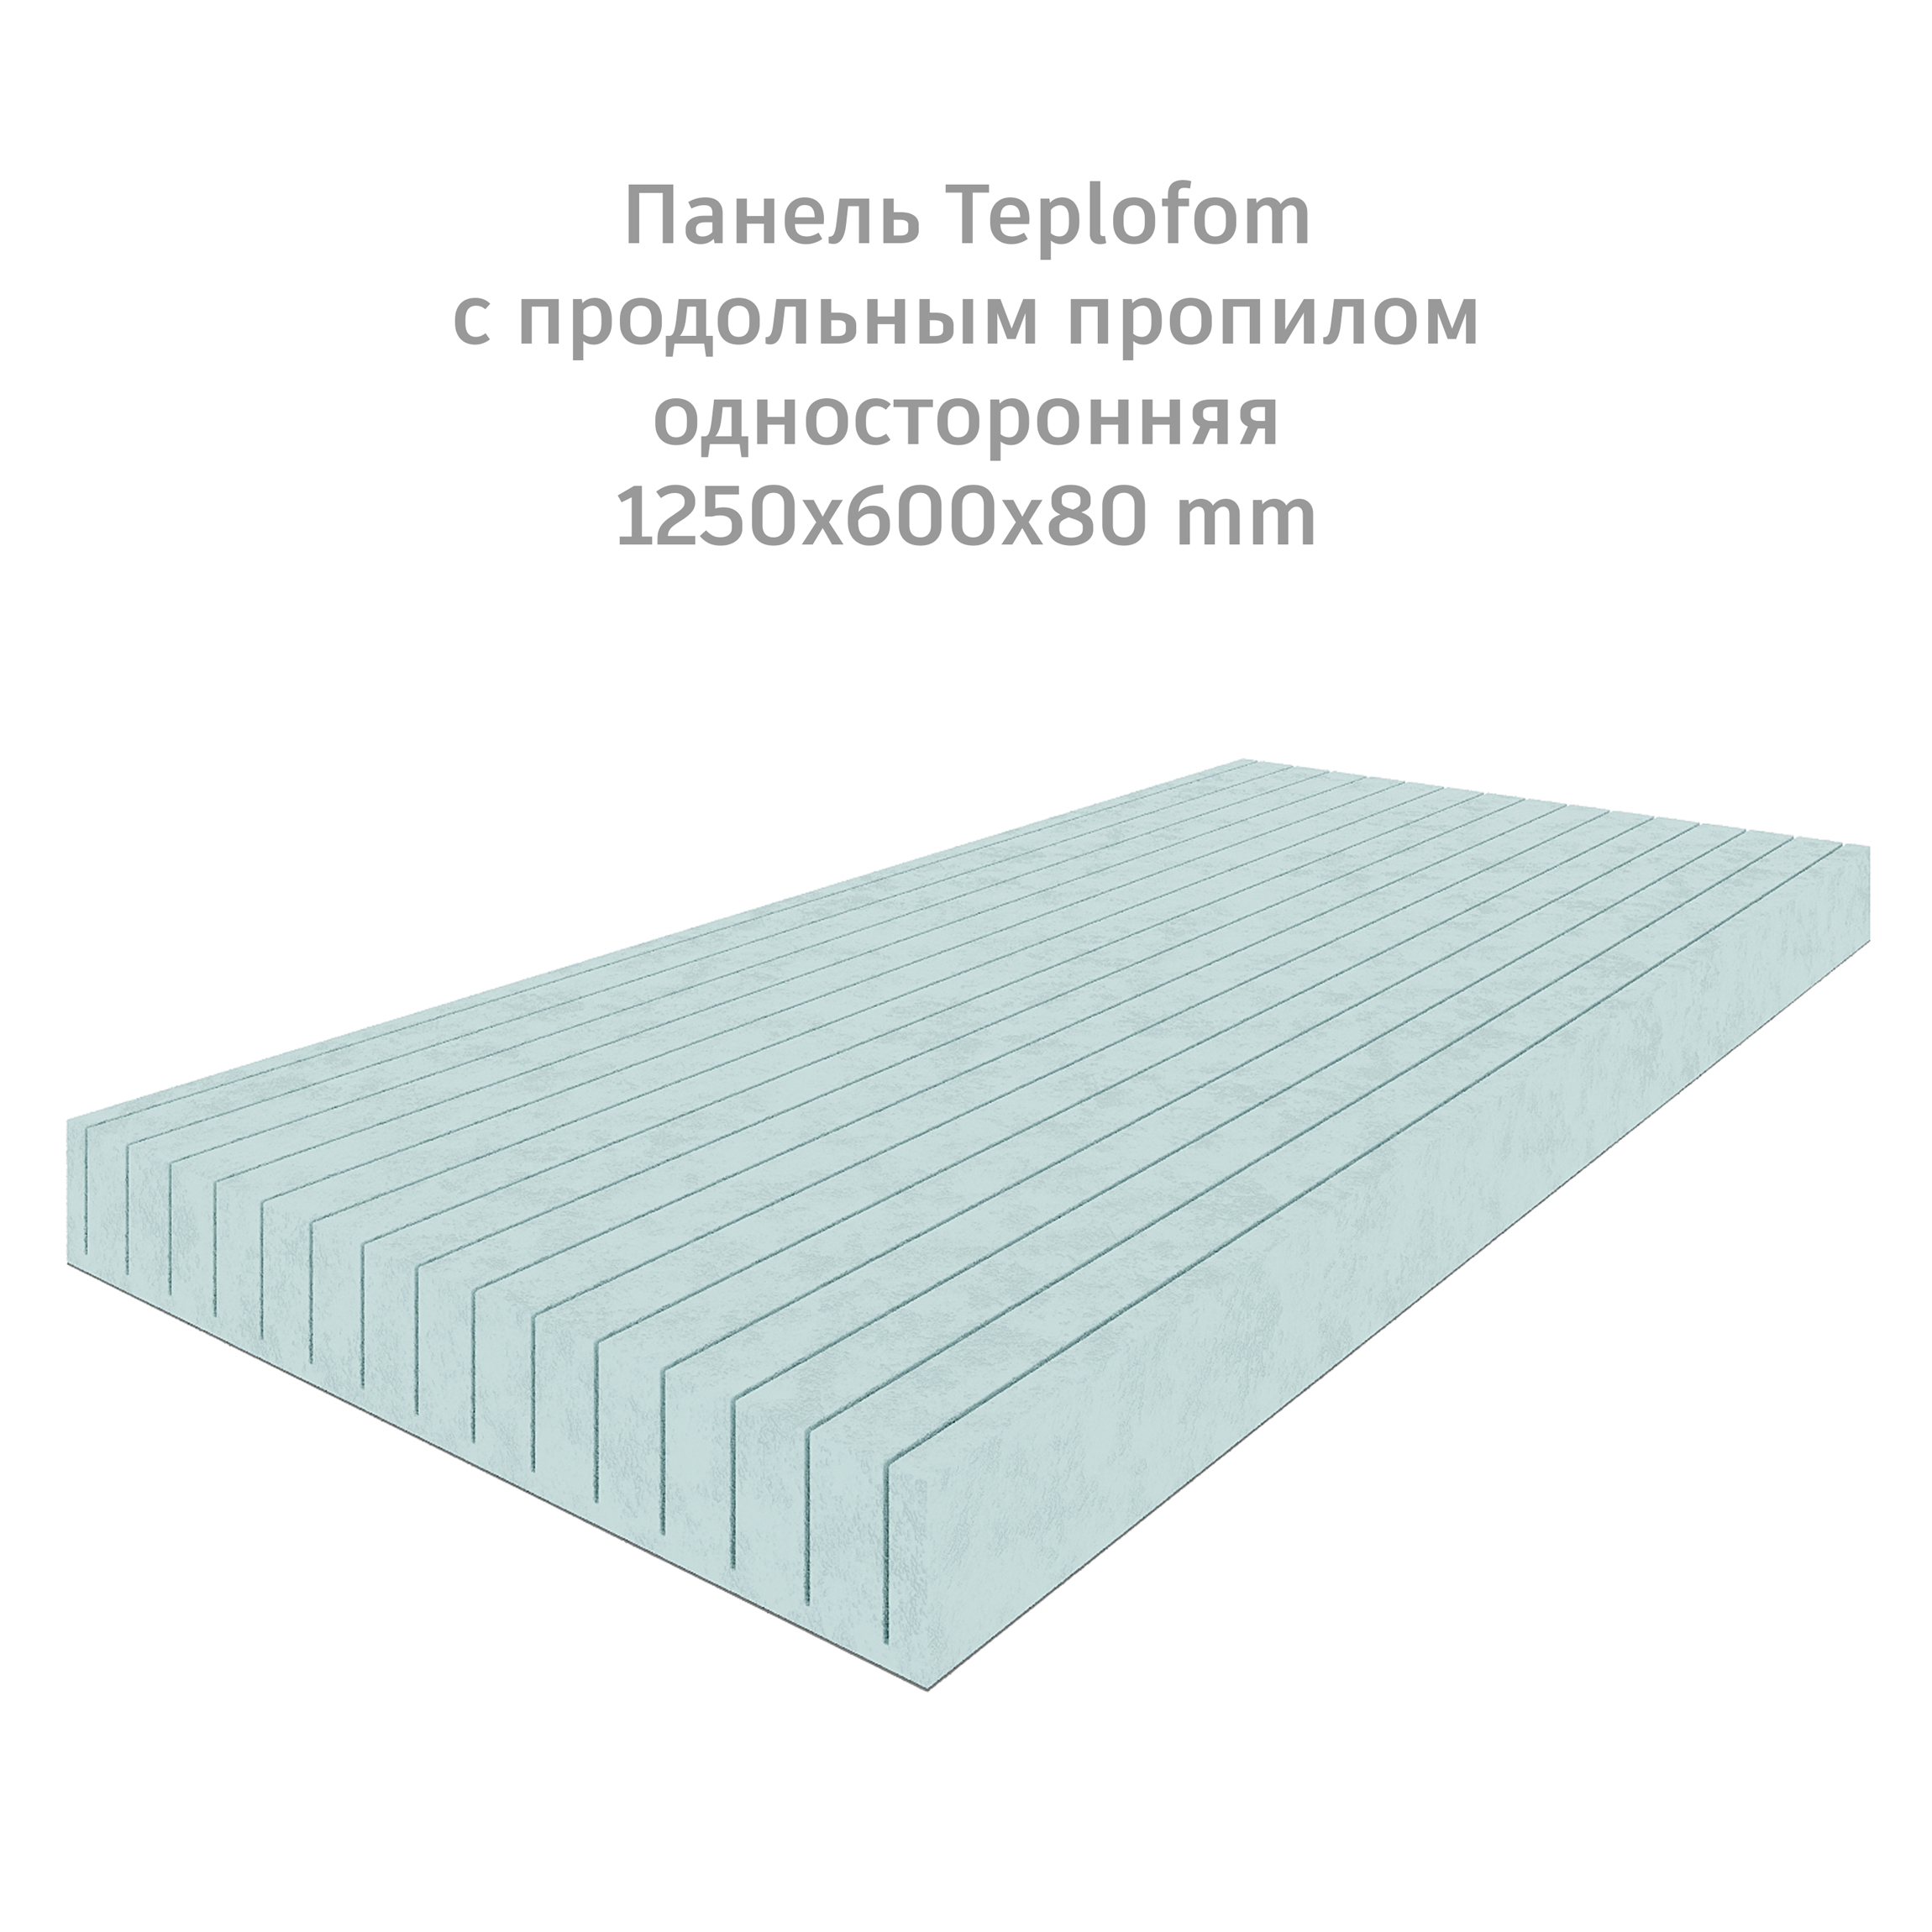 фото Теплоизоляционная панель teplofom+80 xps-01 (односторонний слой) 1250x600x80мм продольный